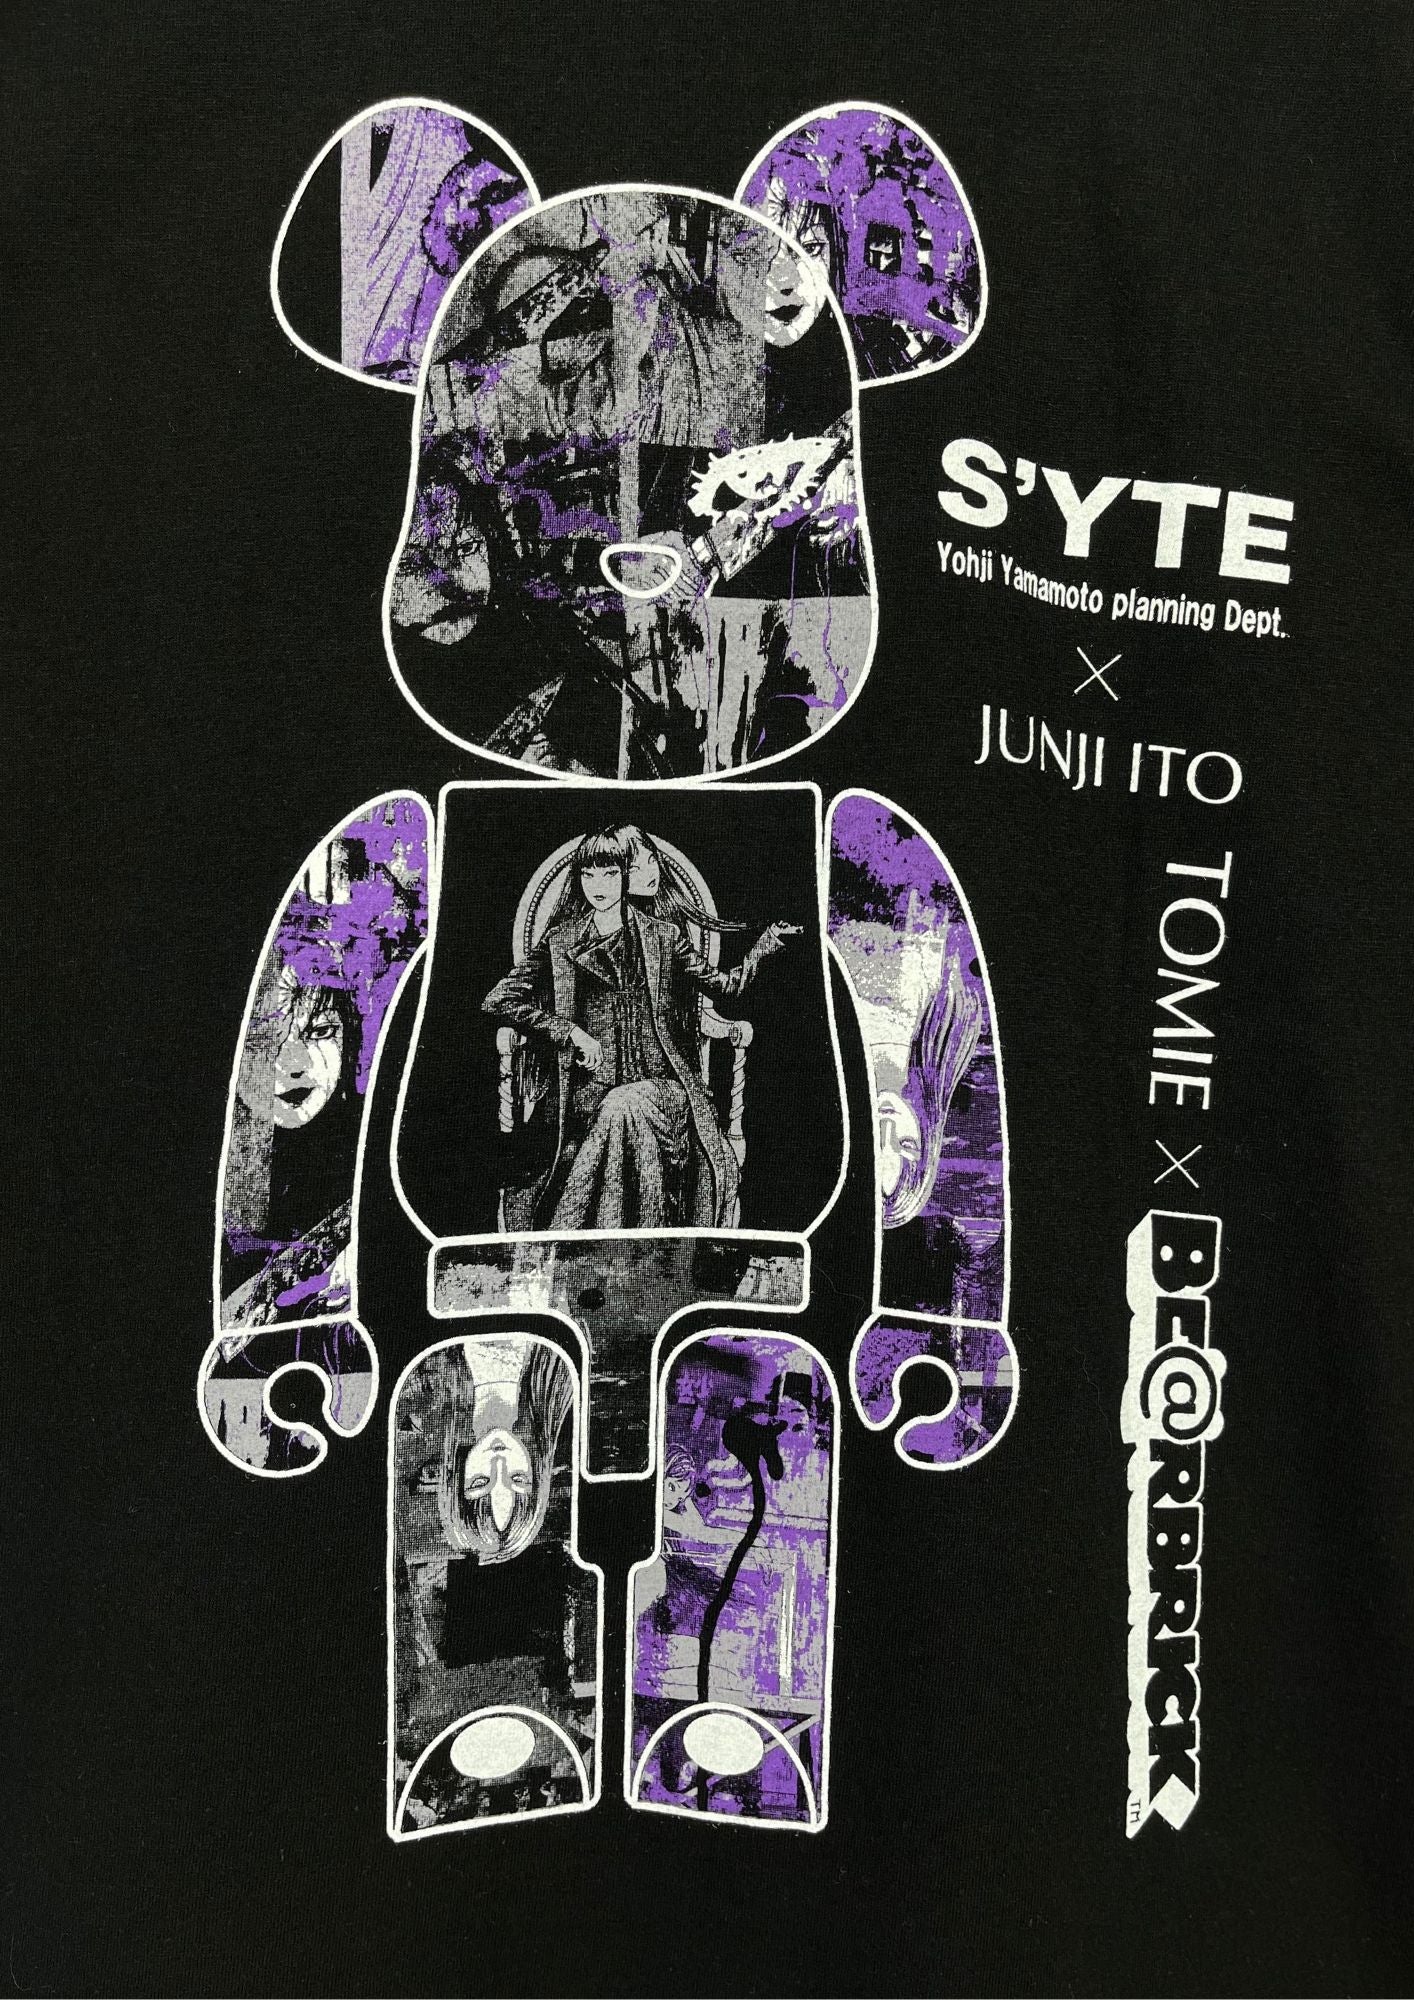 Junji Ito x S'YTE Yohji Yamamoto x BE@RBRICK Tomie T-shirt